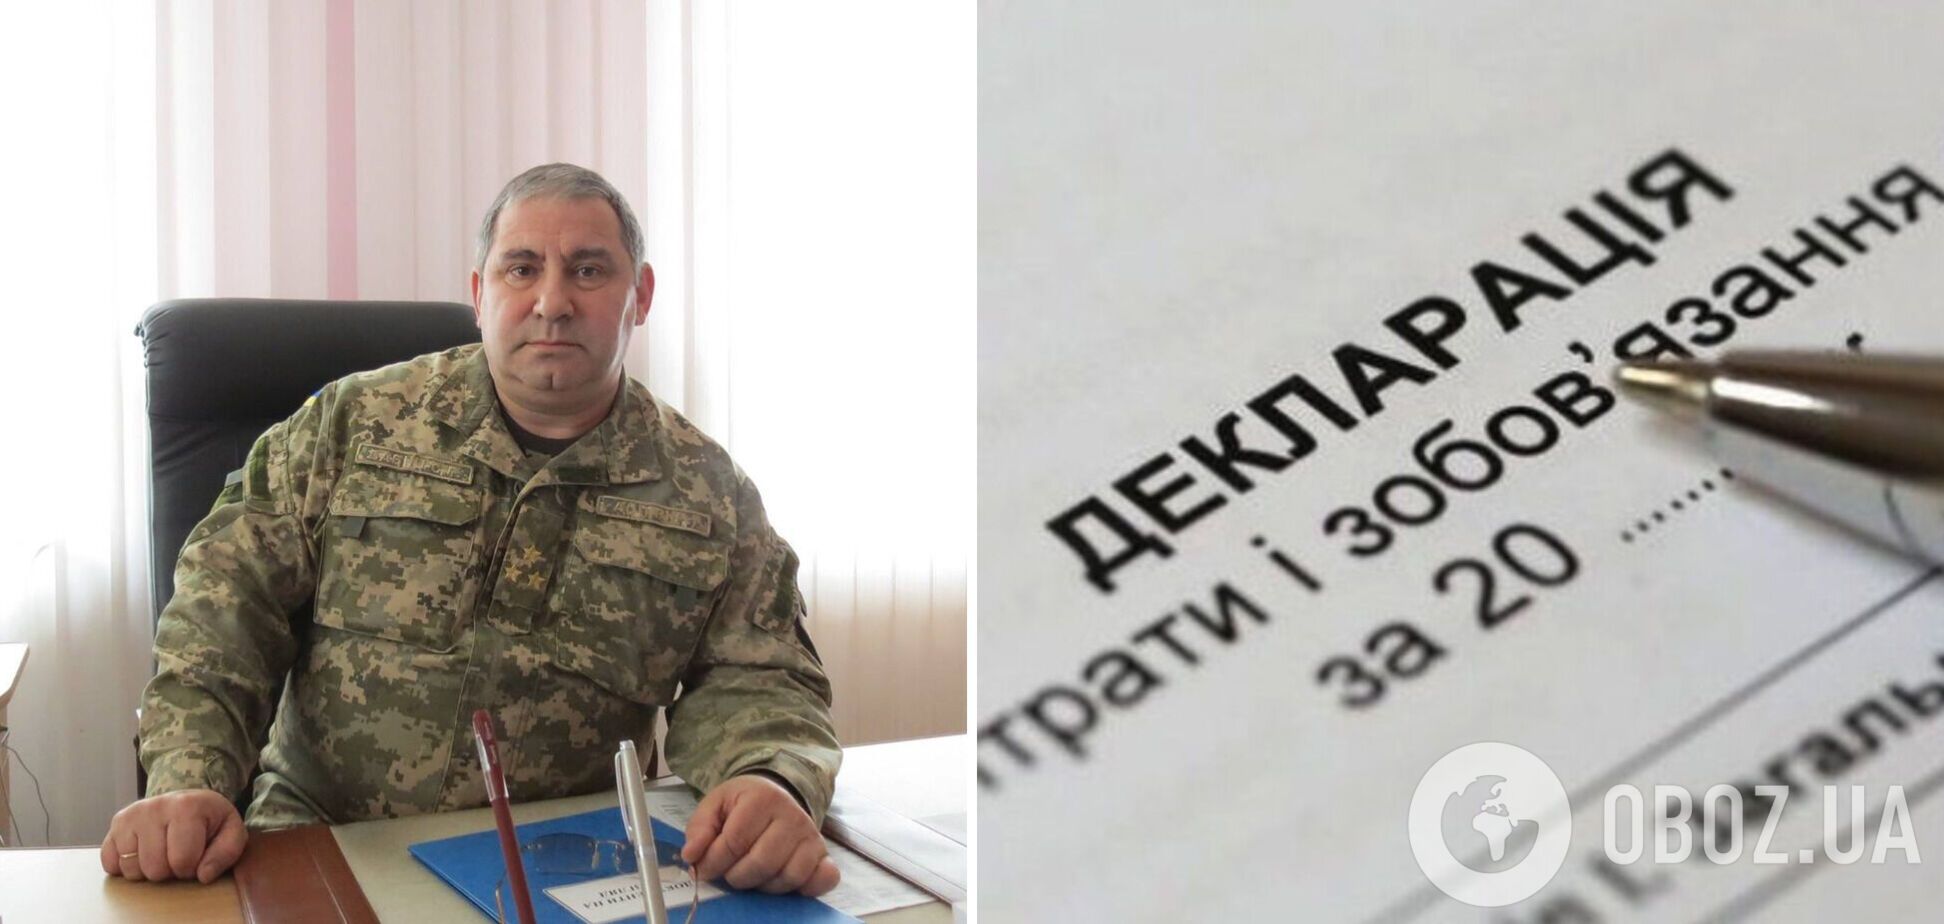 Уволенный военком со Львовщины задекларировал 6,4 млн грн, шесть квартир и новый Lexus: всплыли громкие подробности